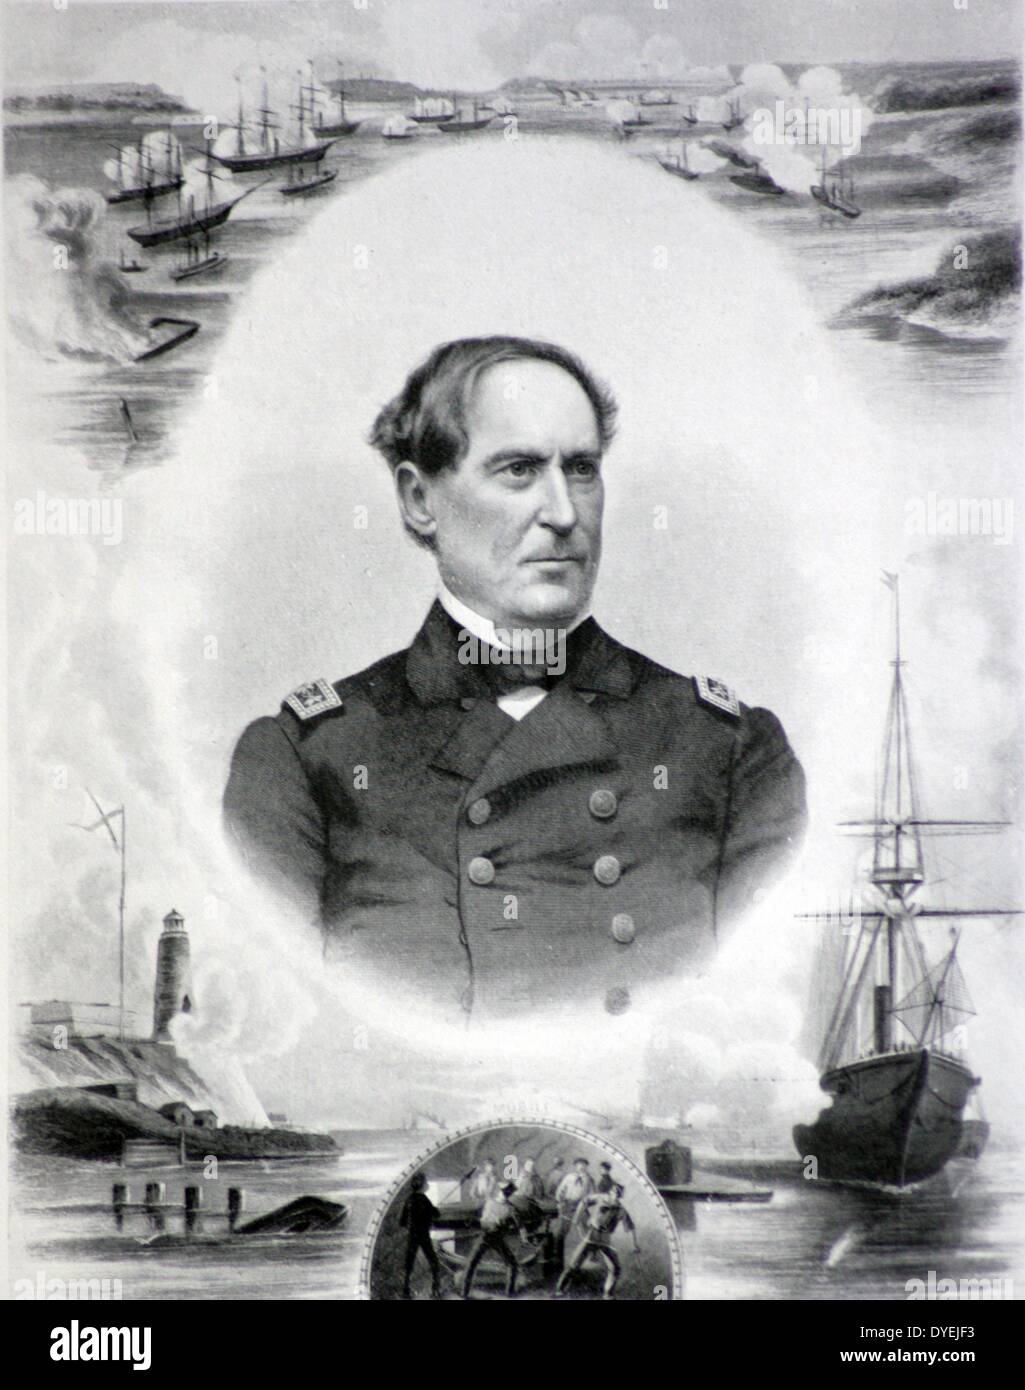 G Admiral David Farragut, U.S.N. (1801-1890) Obwohl ein Südländer durch Geburt, Farragut in seinen Dienst treu zu bleiben entschieden und war der erfolgreichste des Admirals. Stockfoto